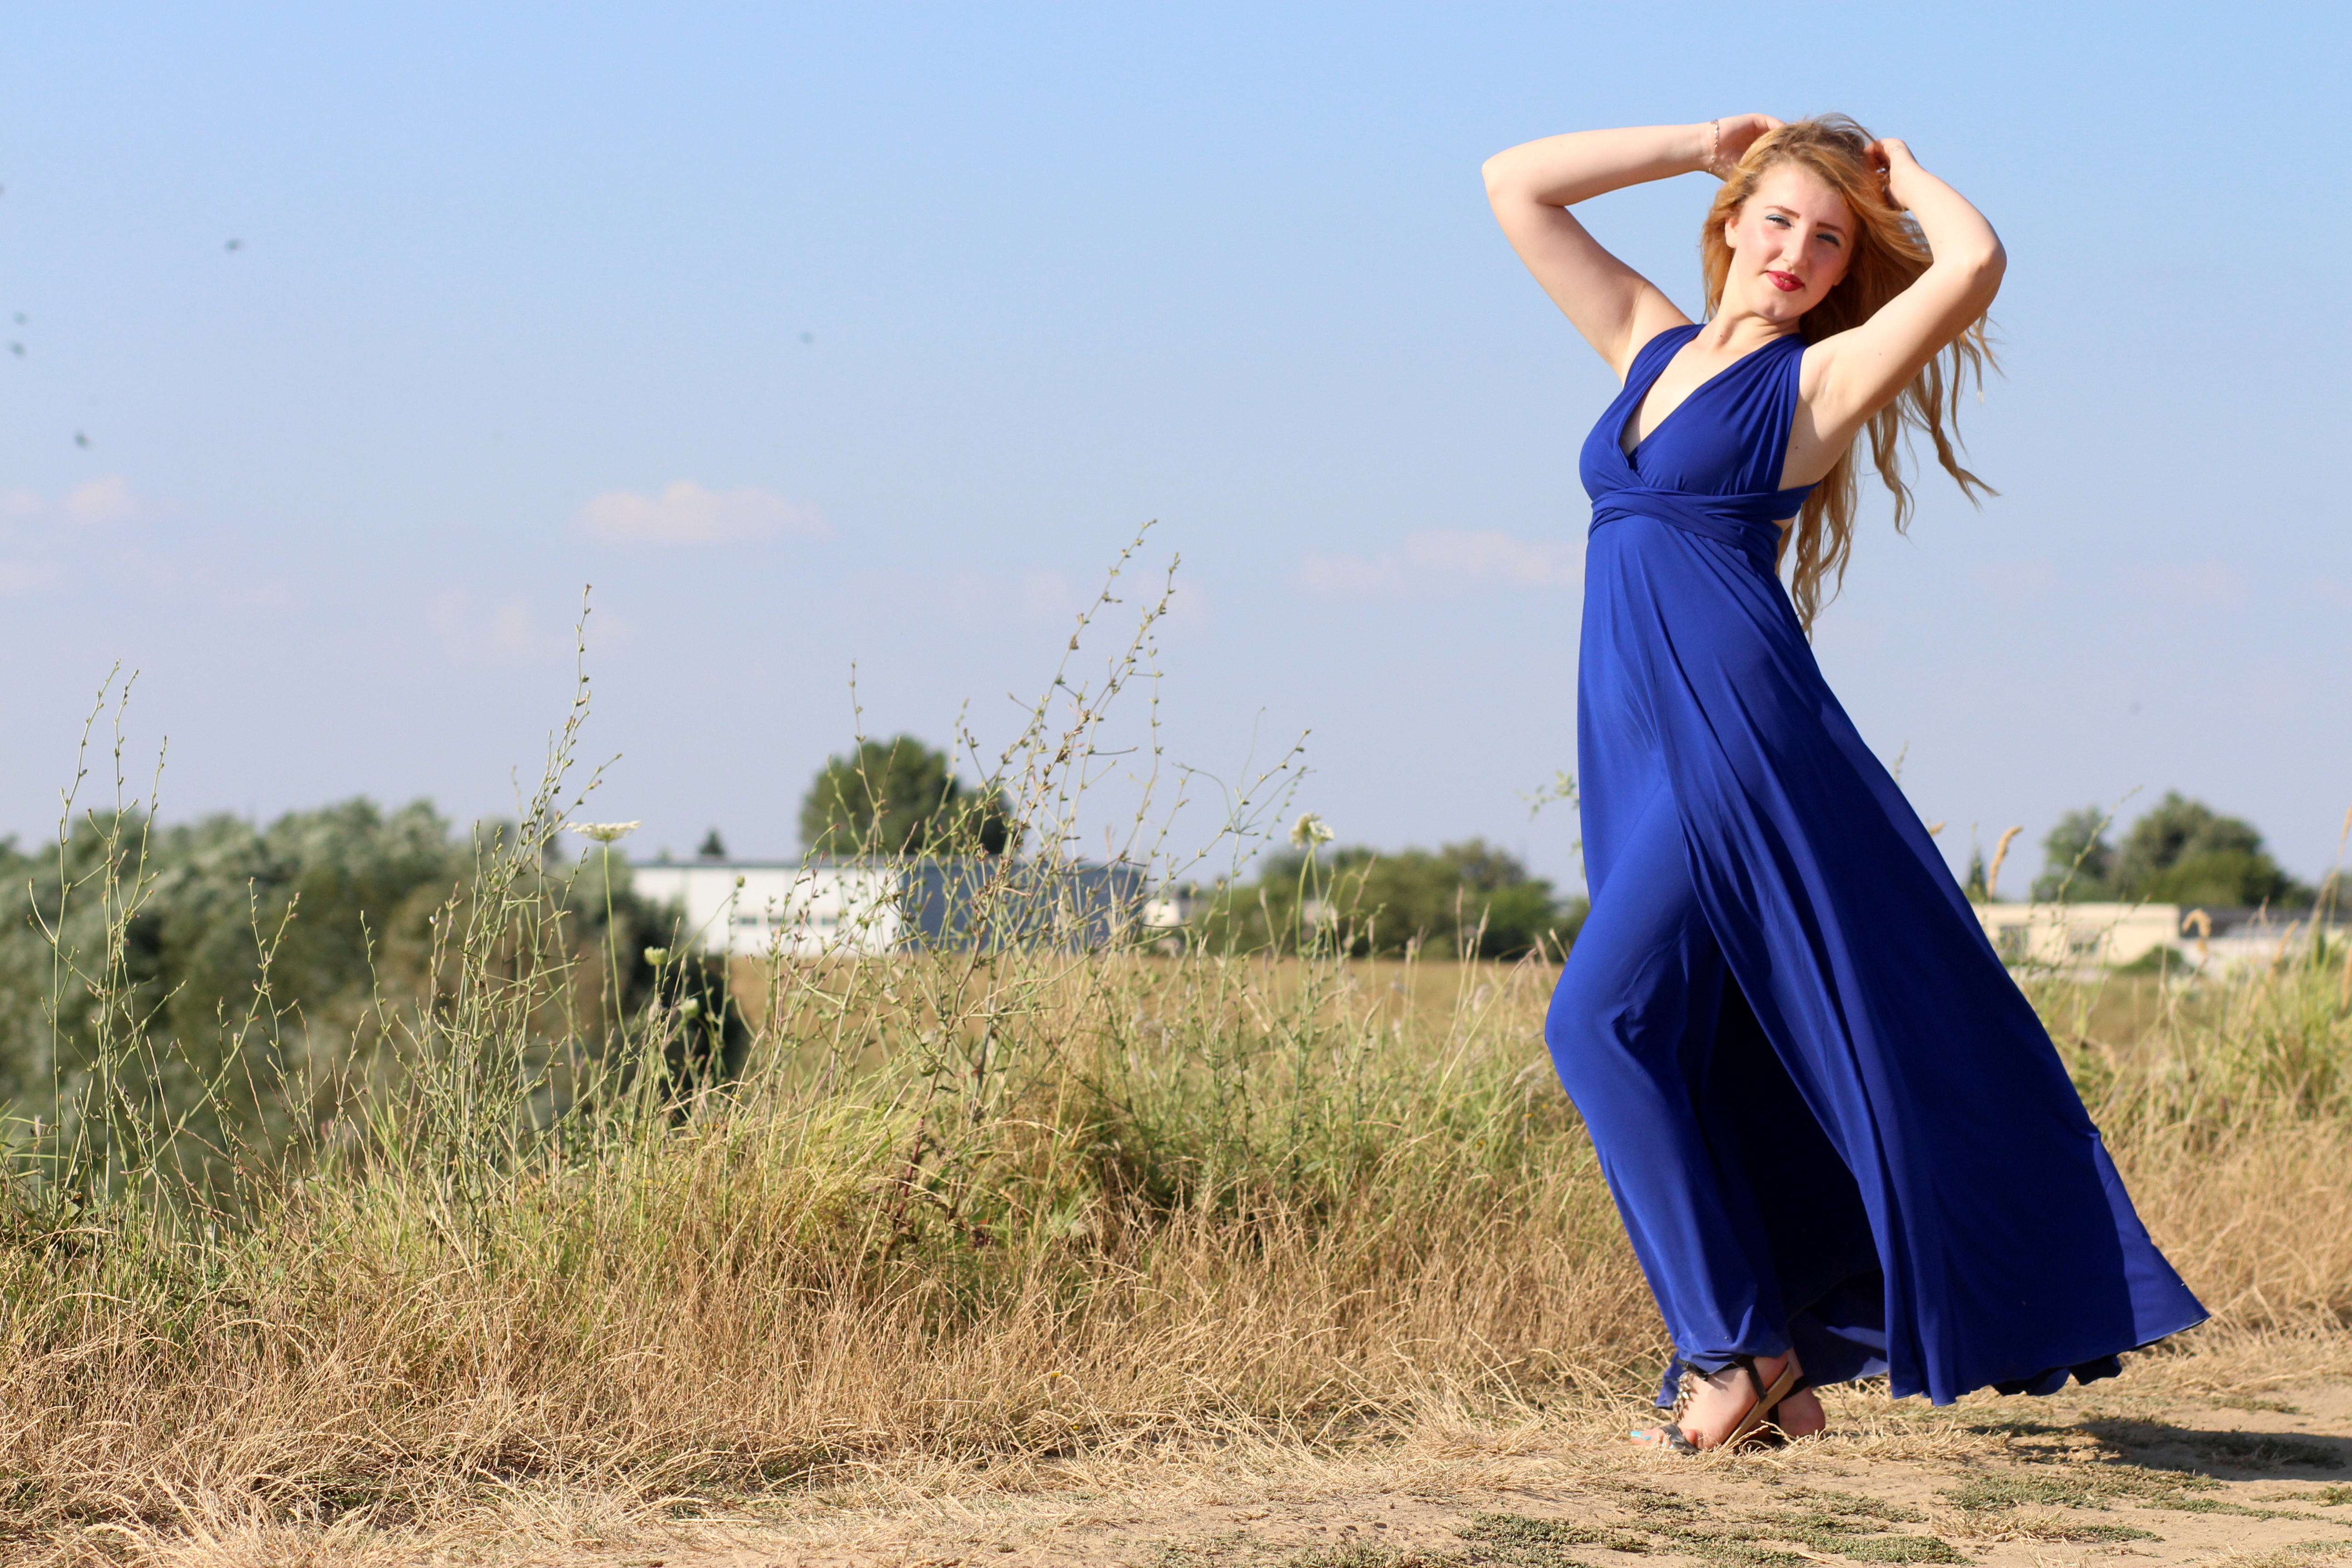 Девушка в синем платье